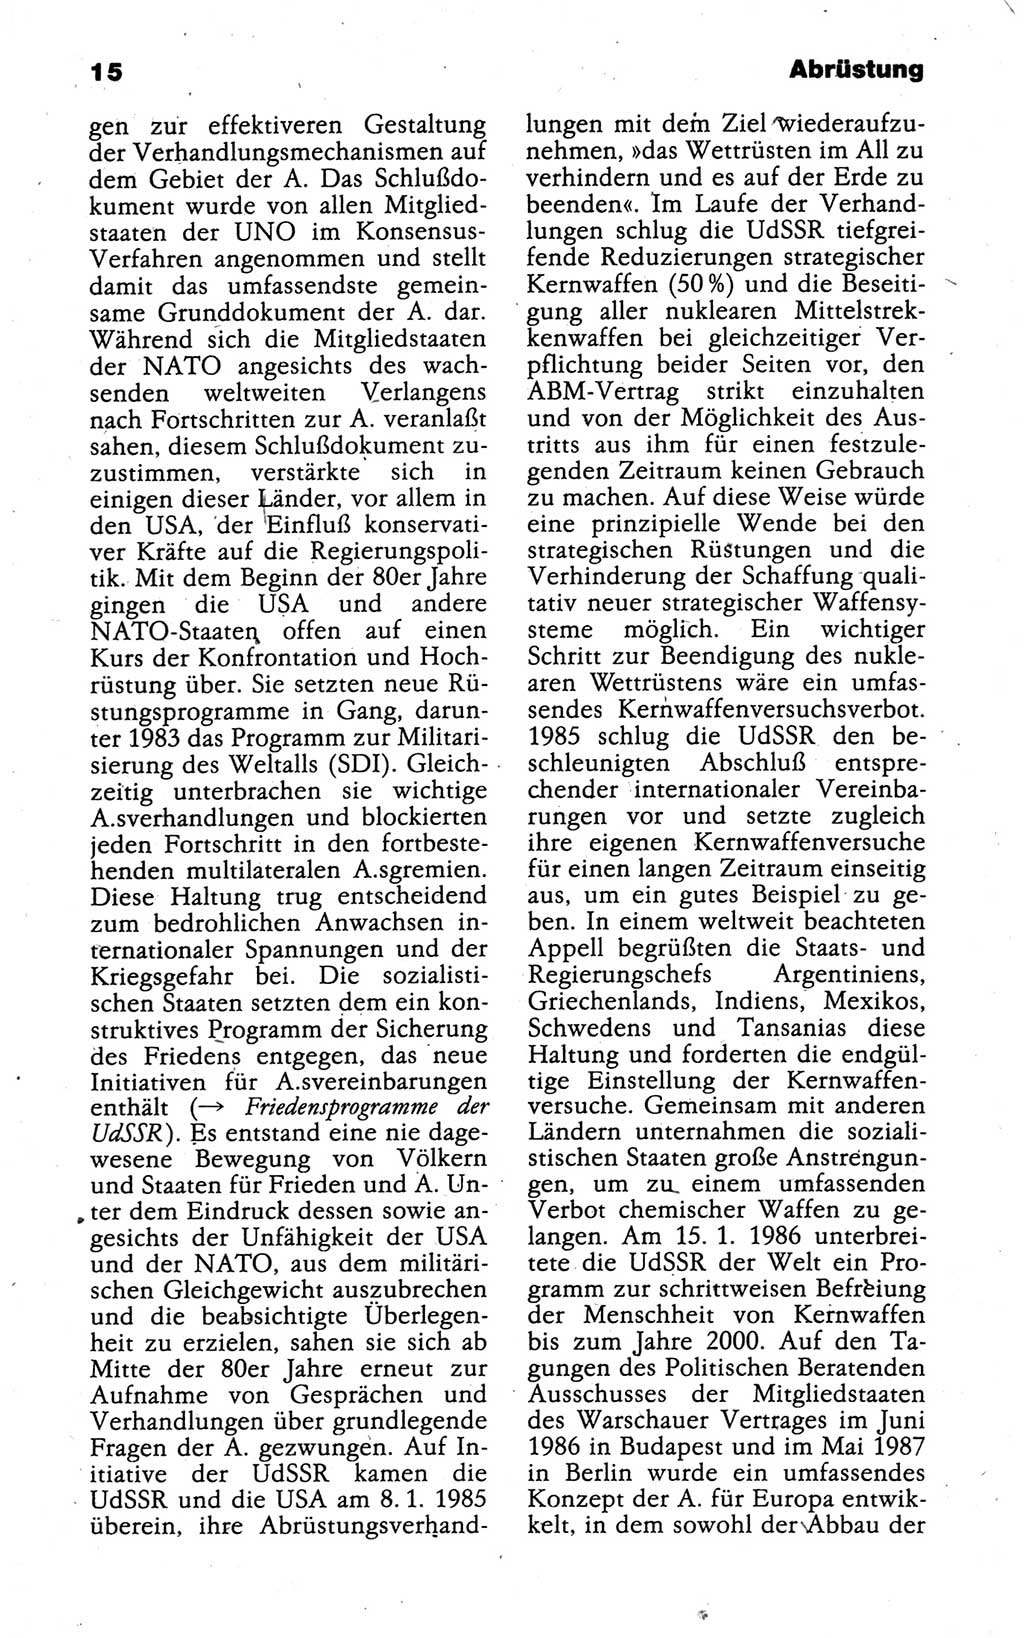 Kleines politisches Wörterbuch [Deutsche Demokratische Republik (DDR)] 1988, Seite 15 (Kl. pol. Wb. DDR 1988, S. 15)